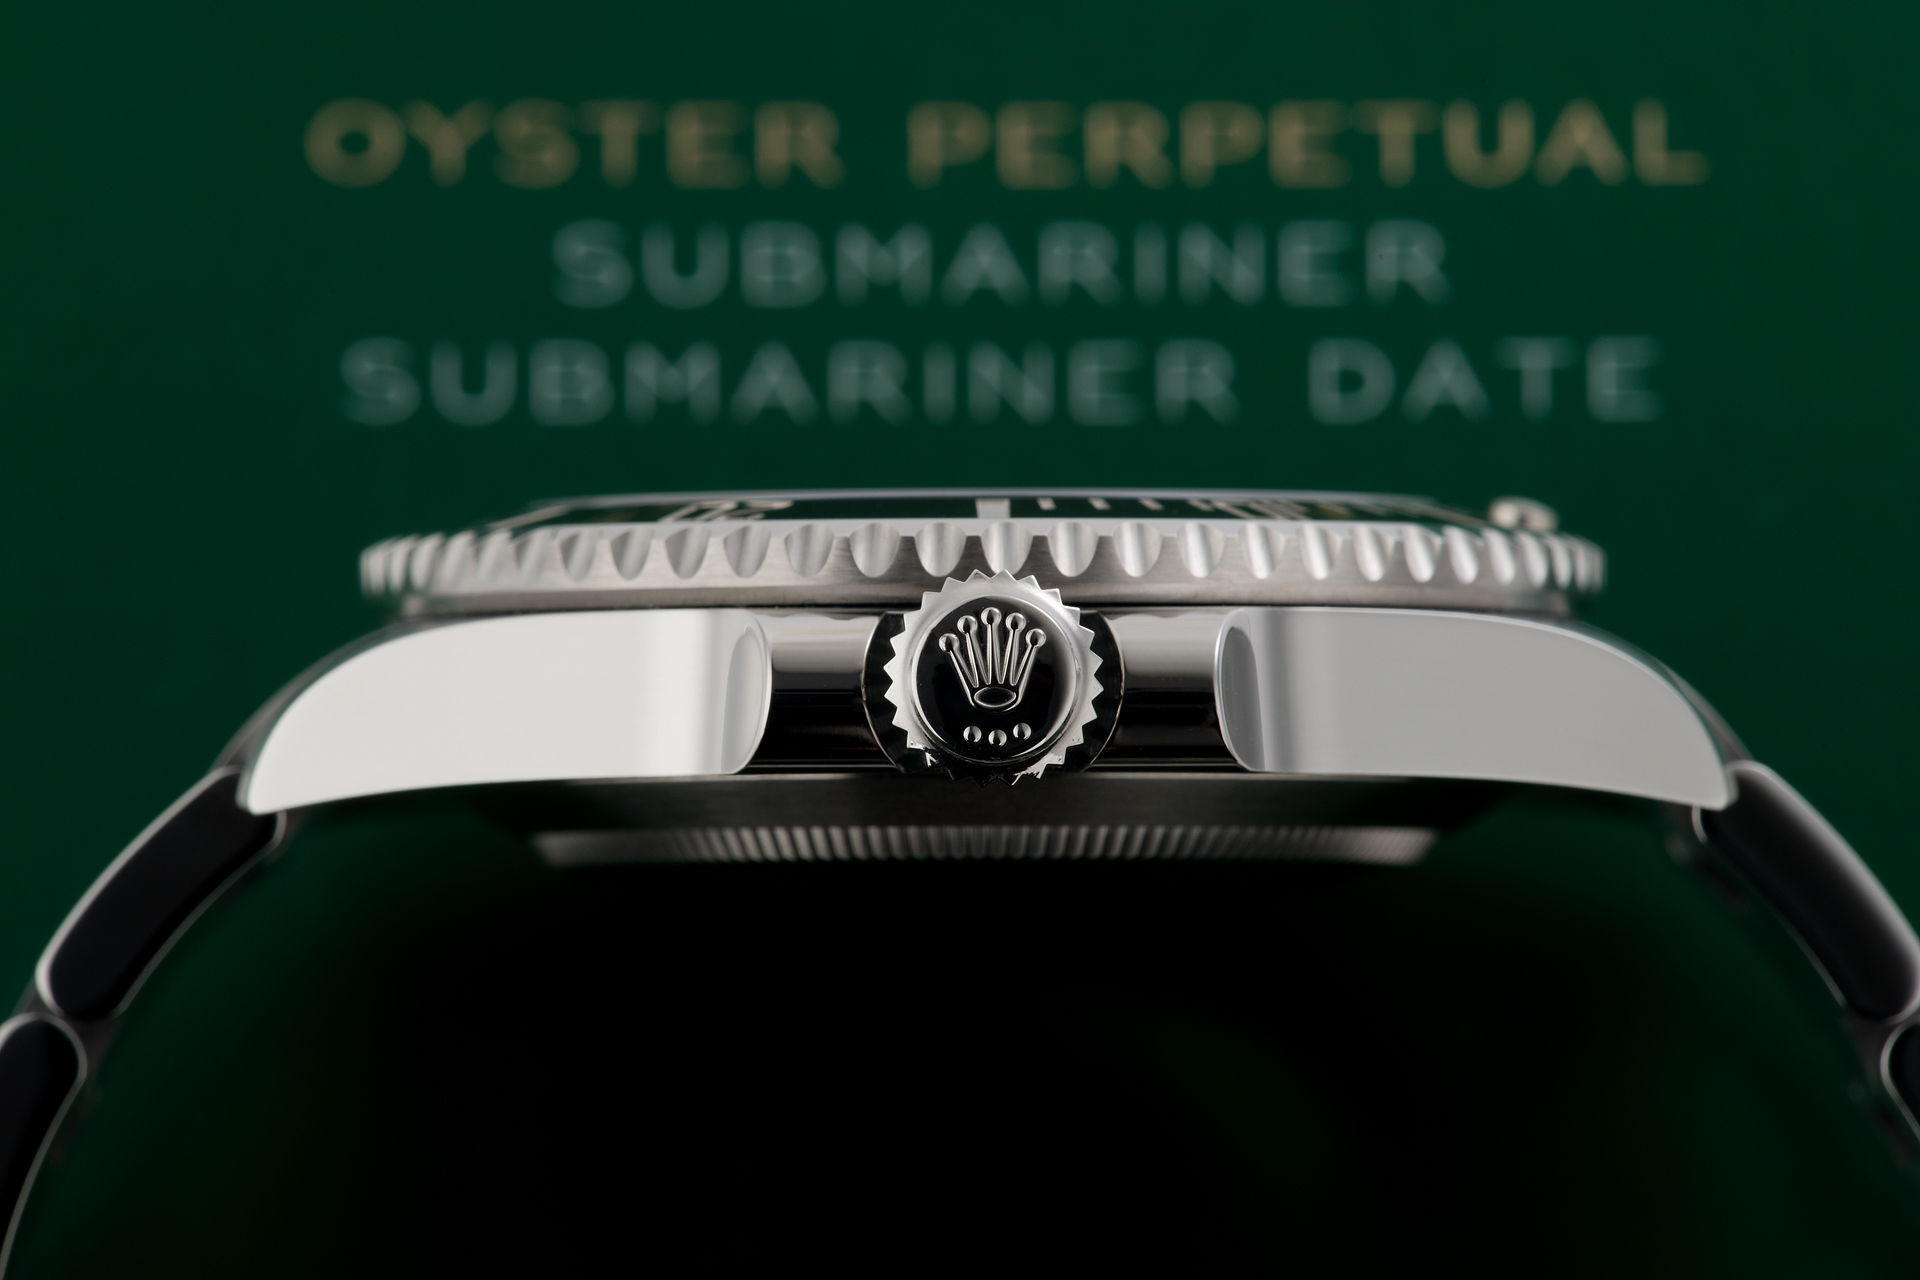 ref 114060 | 5 Year Warranty  | Rolex Submariner 